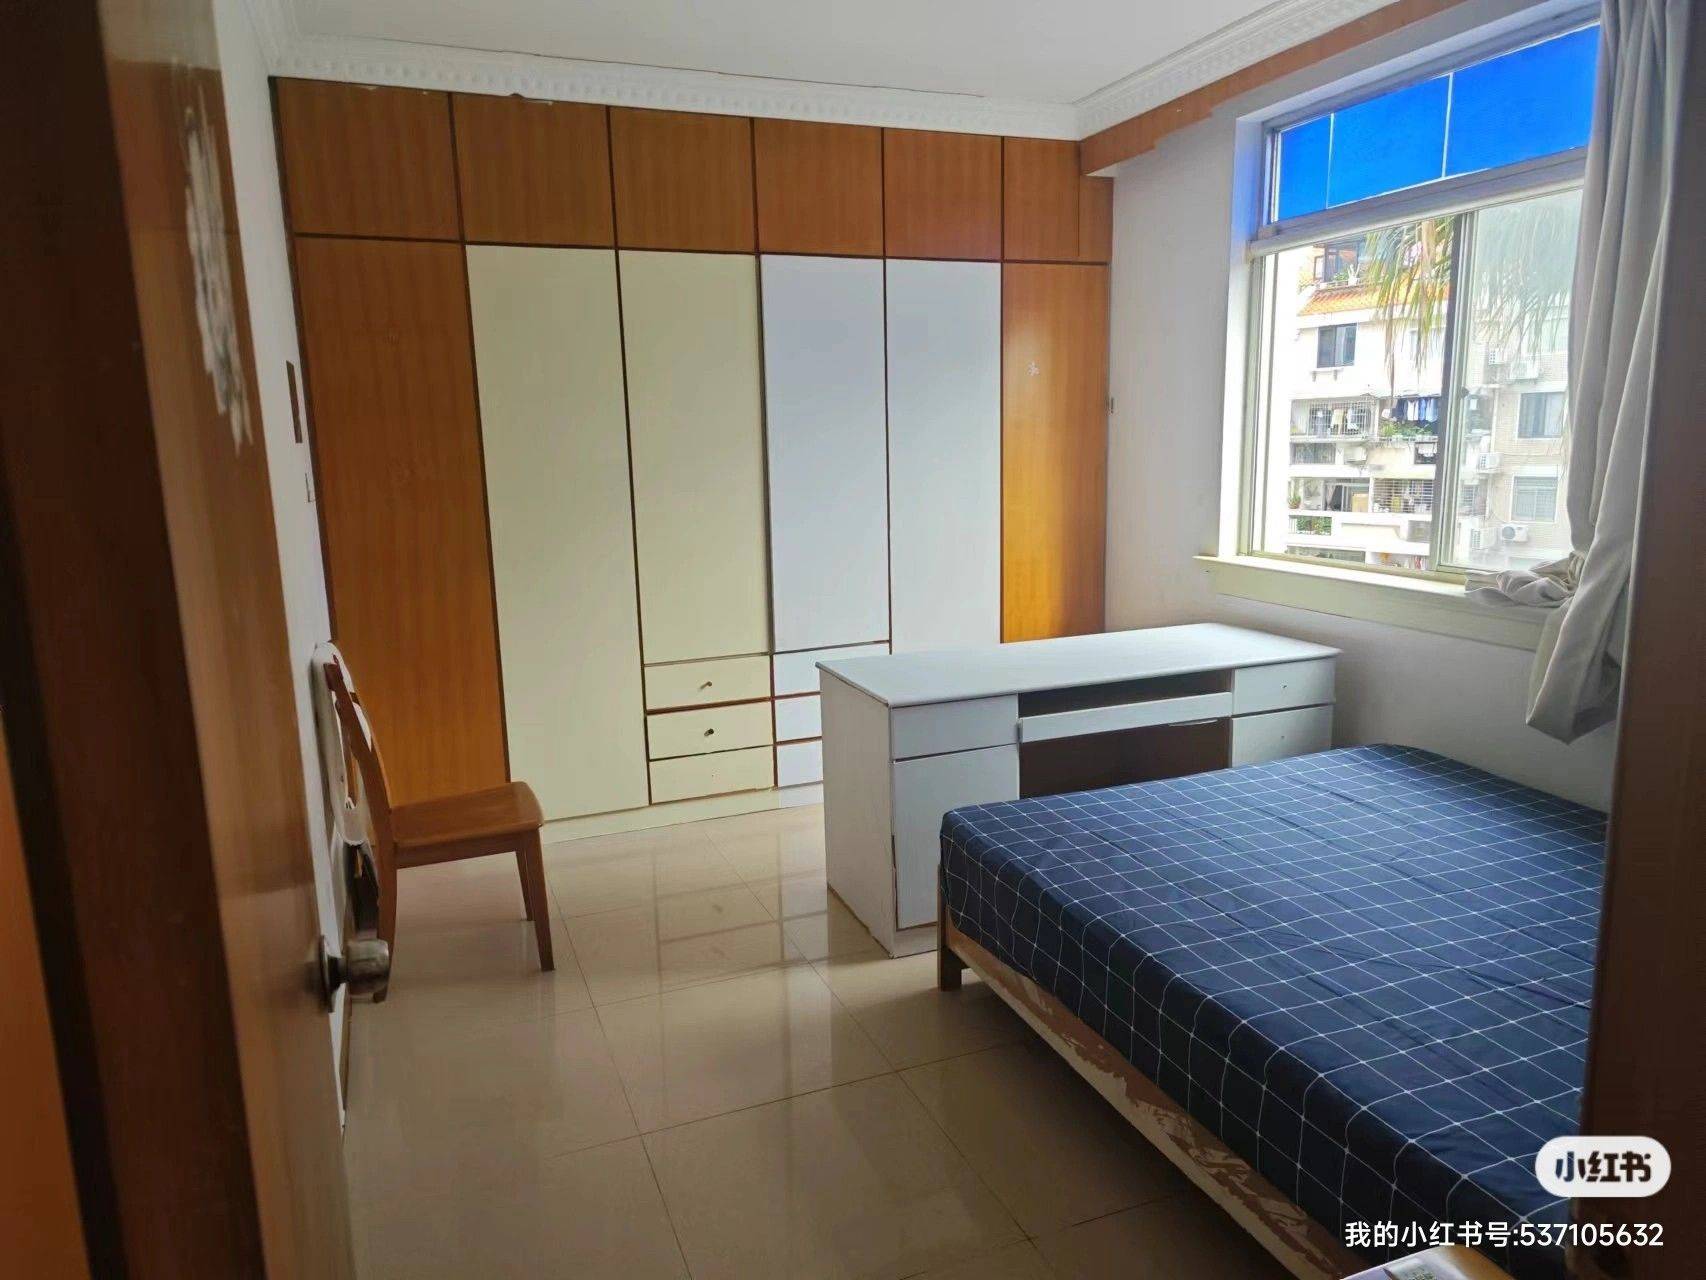 Xiamen-Siming-Cozy Home,No Gender Limit,“Friends”